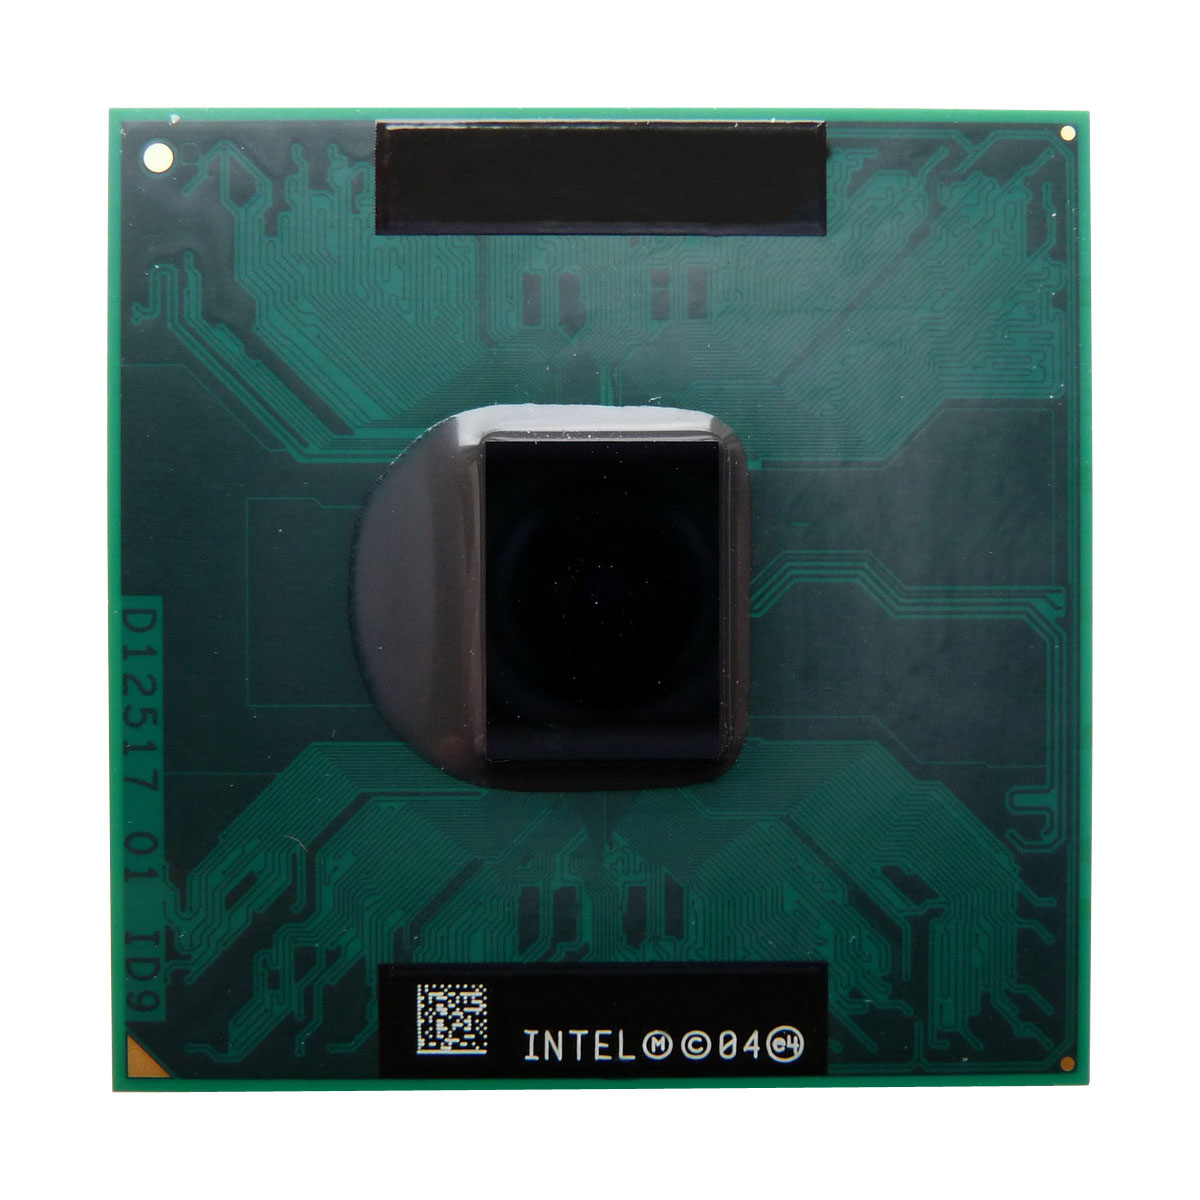 SL8VR Intel Core Duo T2300 Dual-Core 1.66GHz 667MHz FSB 2MB L2 Cache Socket PGA478 Mobile Processor